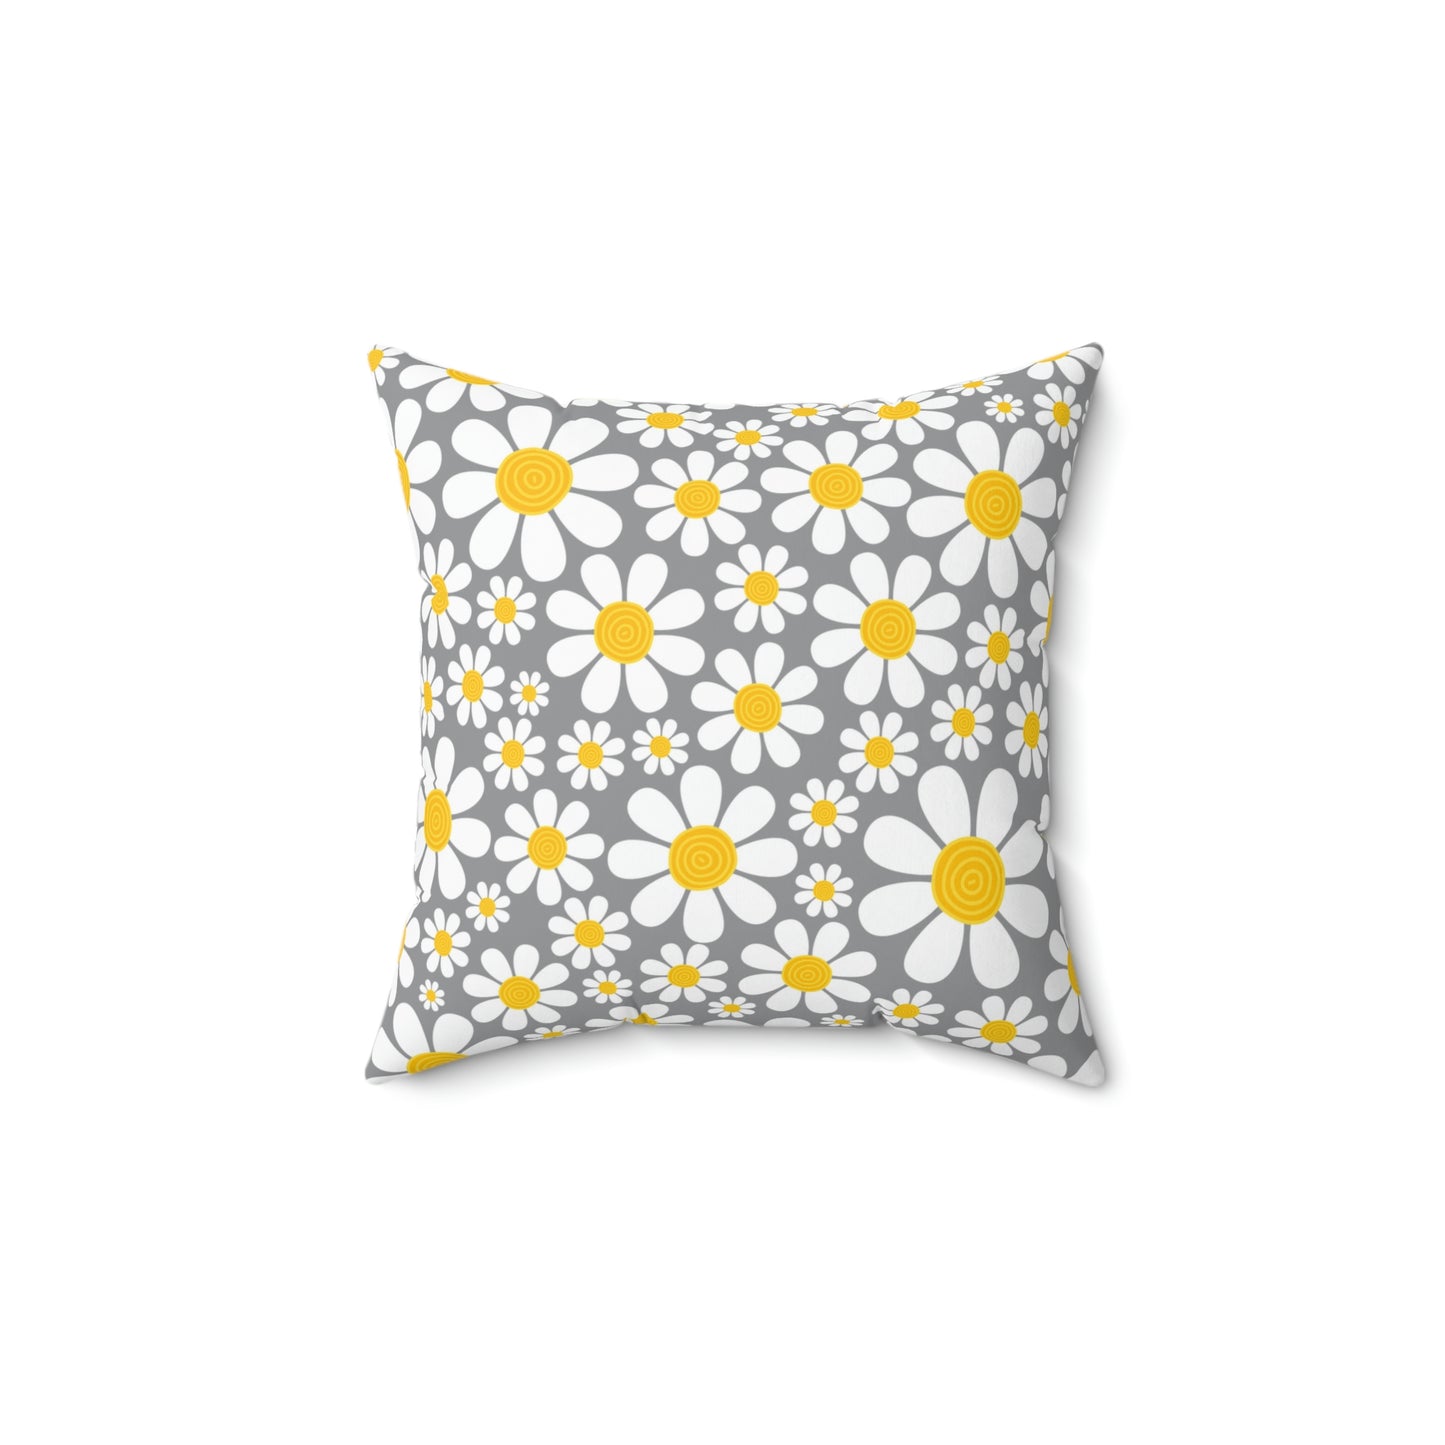 Daisy Throw Pillow / Grey Daisy Cushion